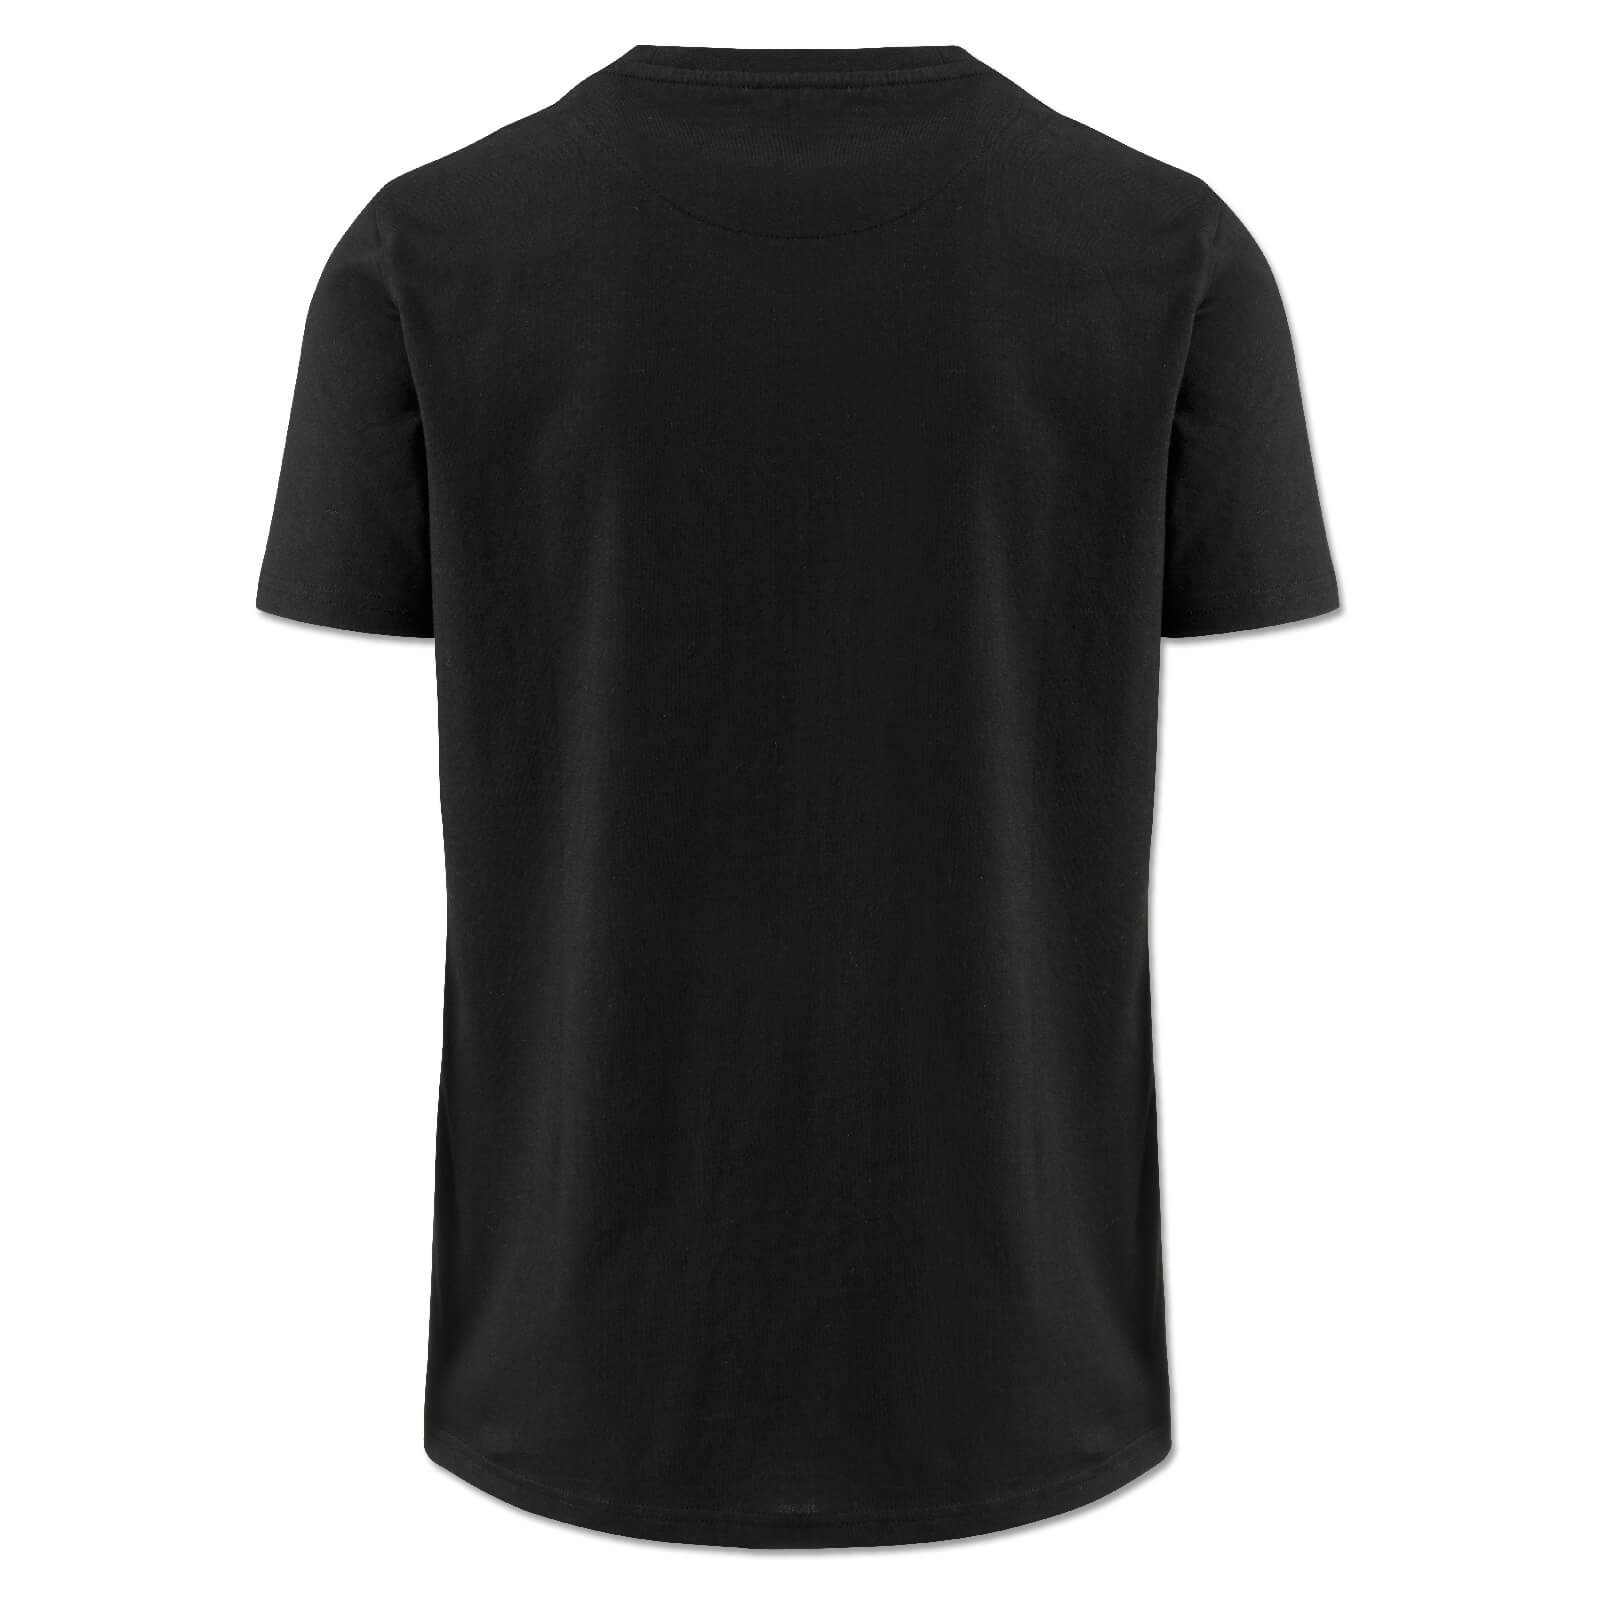 Borussia Dortmund T-Shirt "Nullneun" - black